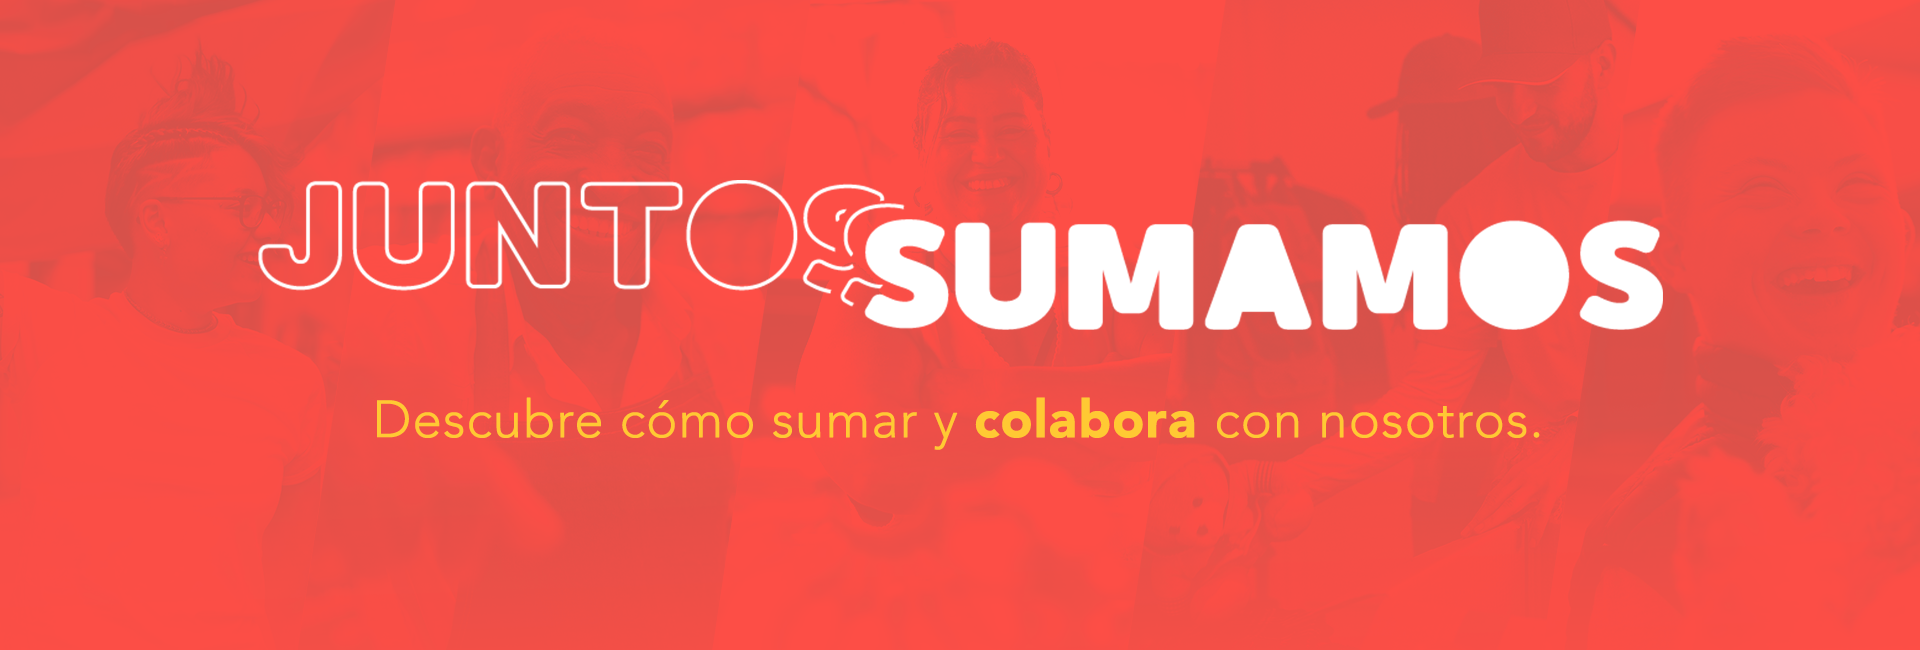 Sonae Sierra presenta 'Juntos Sumamos', su nueva plataforma de Responsabilidad Social Corporativa 